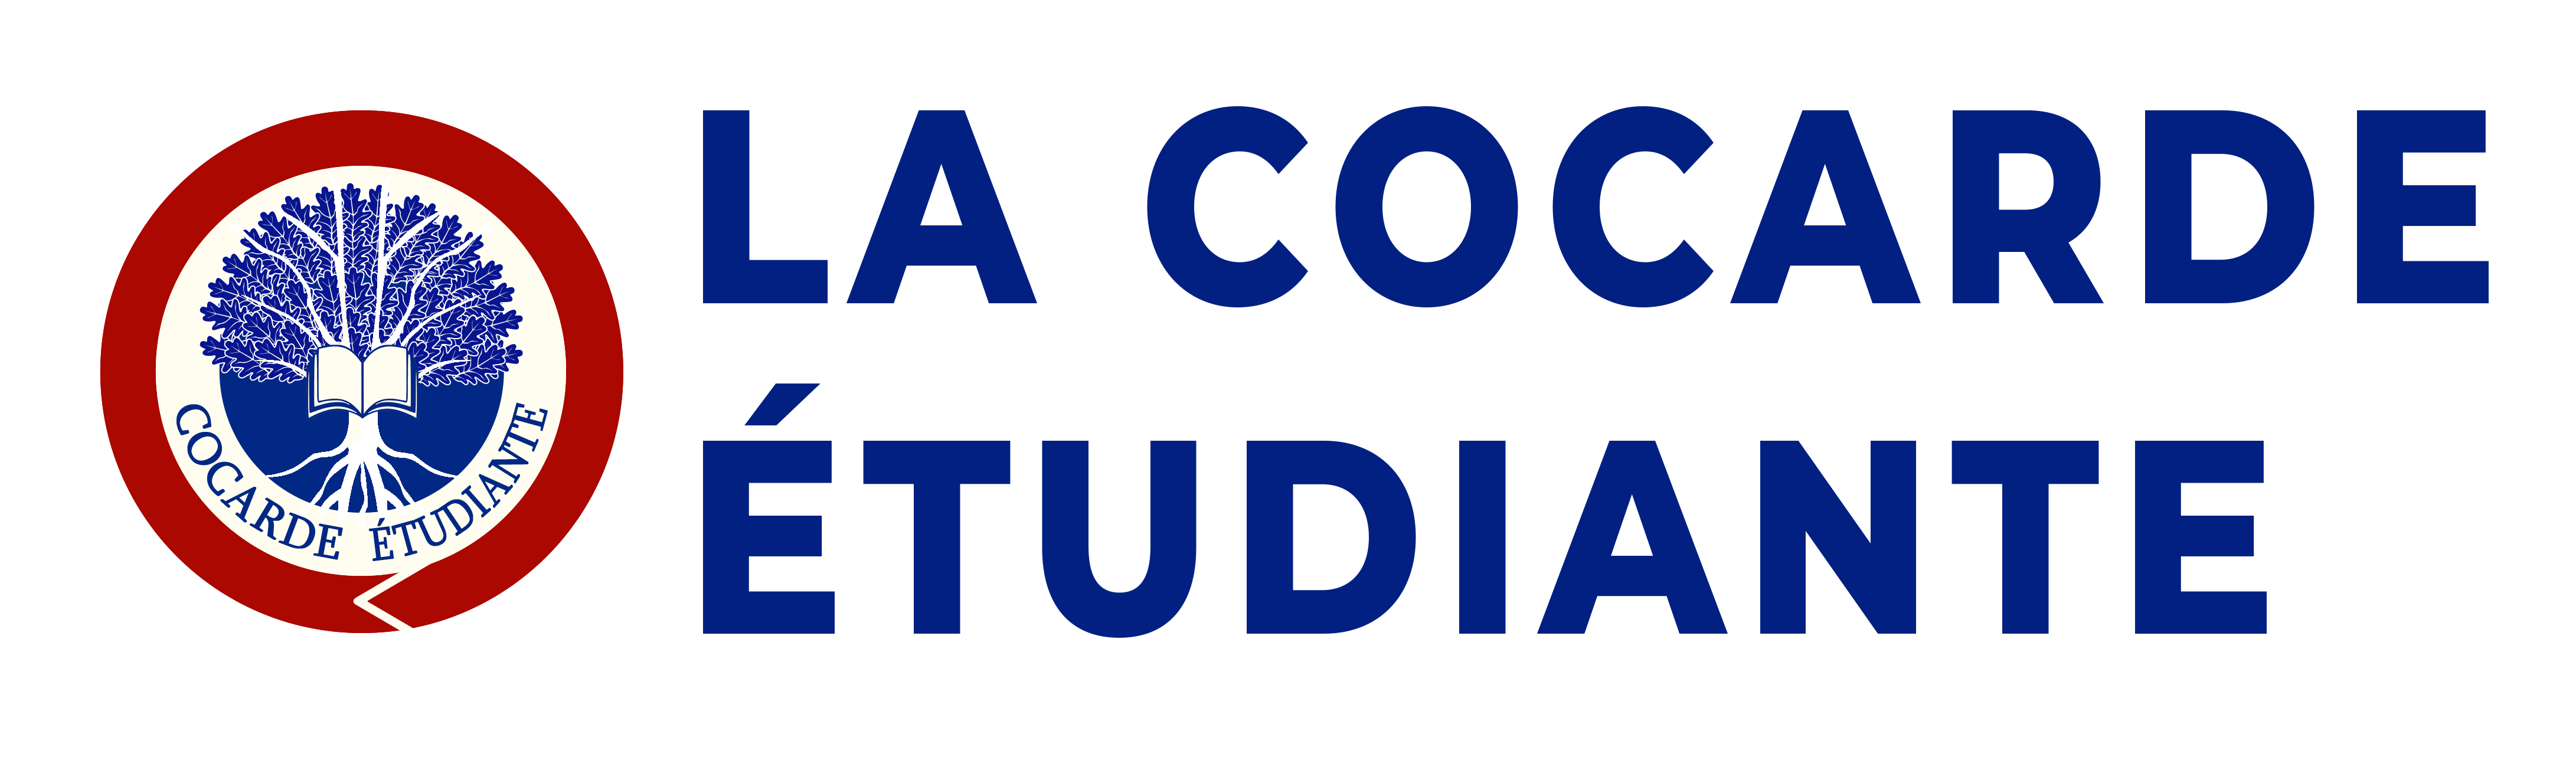 La Cocarde Etudiante logo